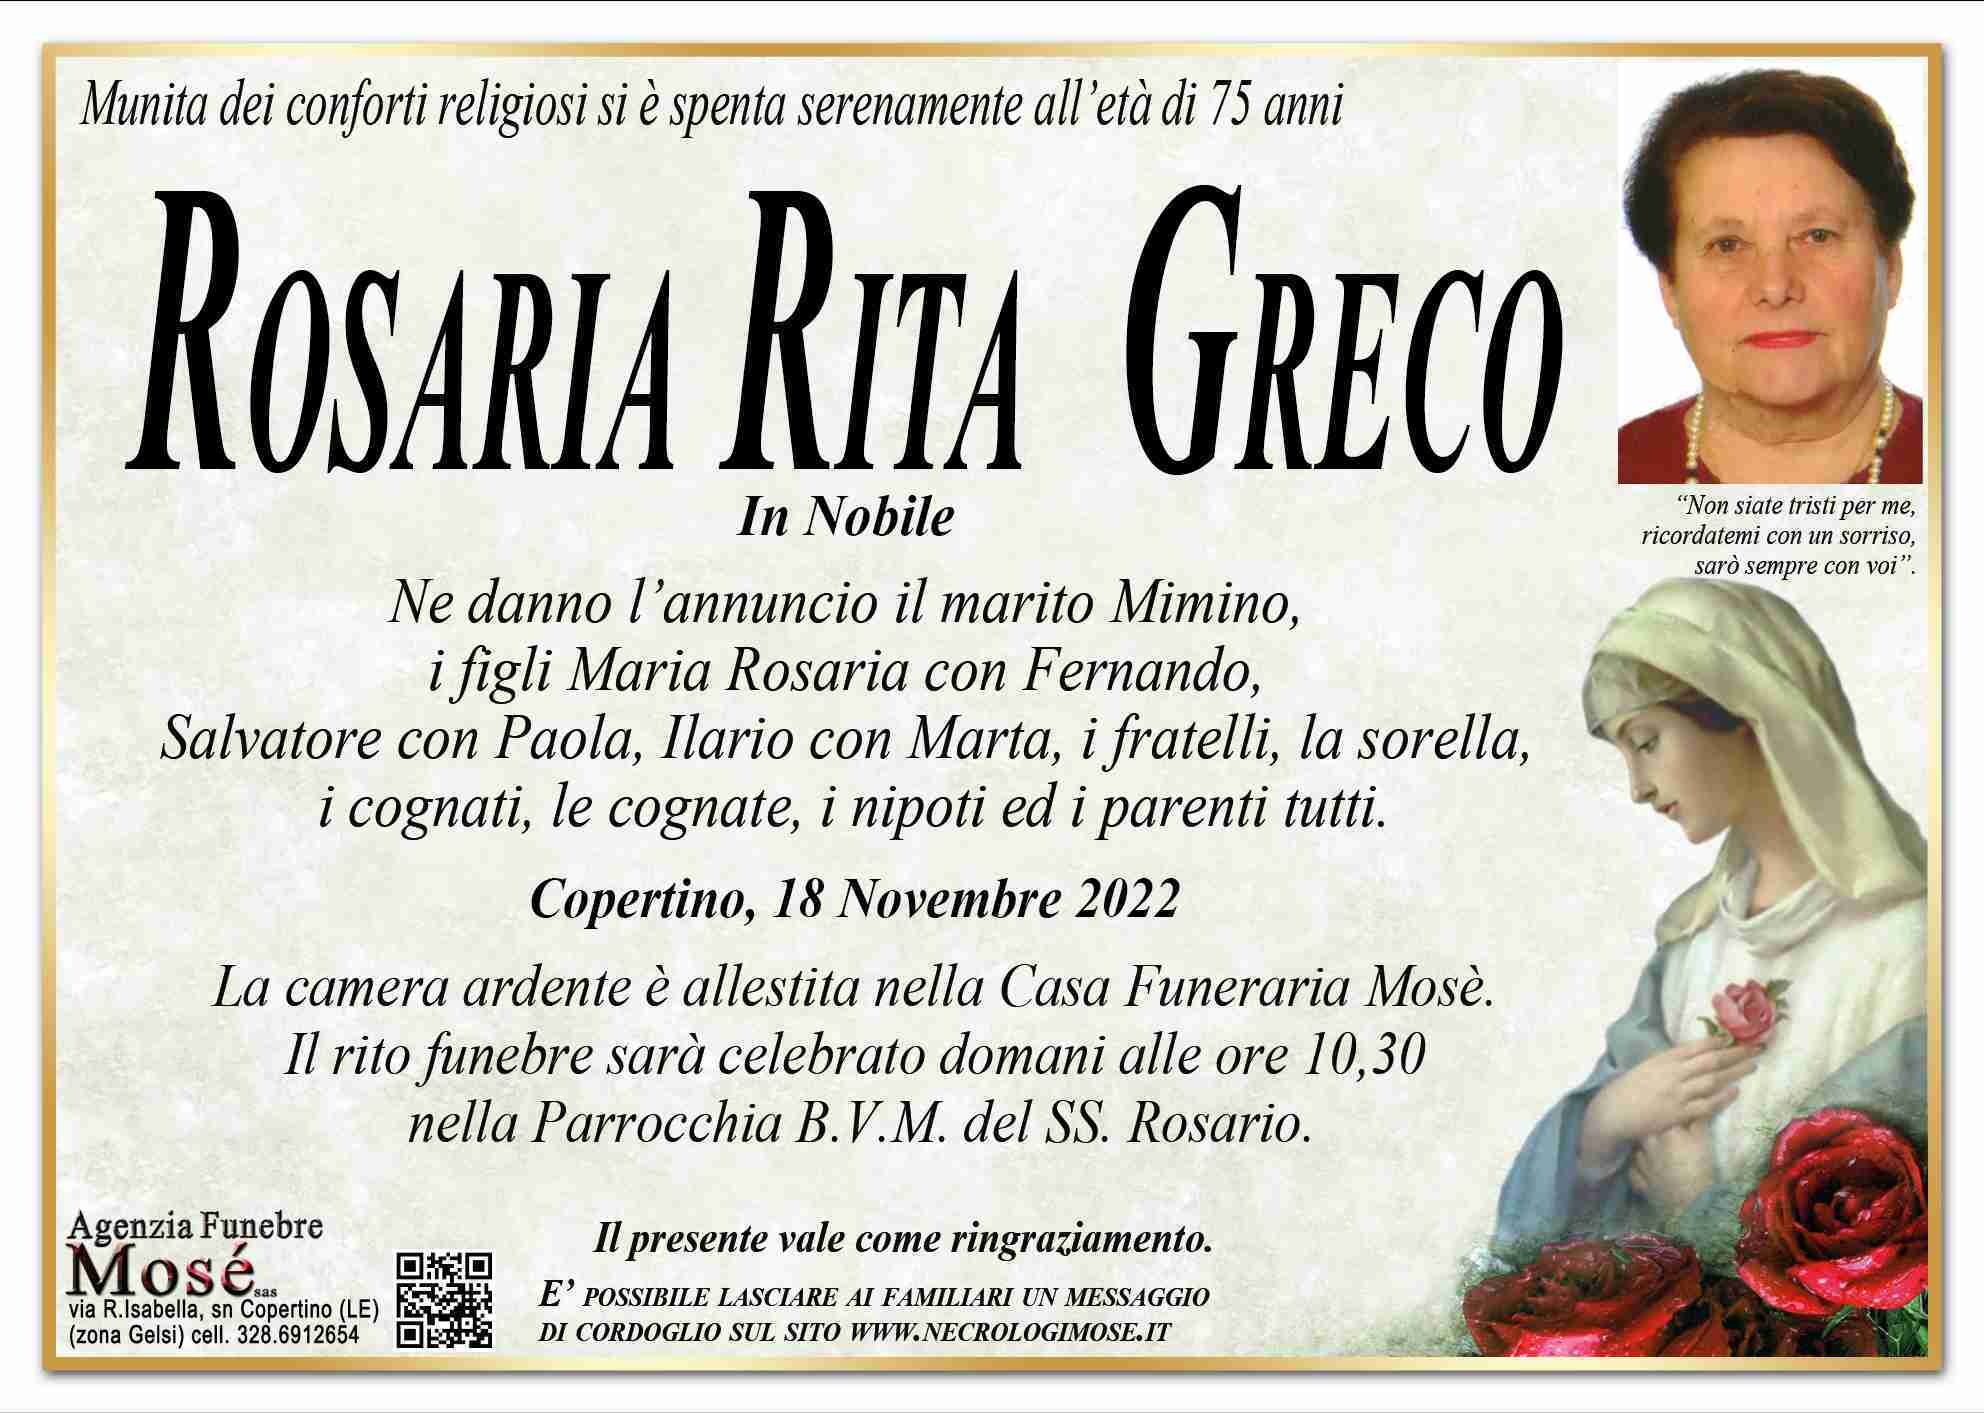 Rosaria Rita Greco